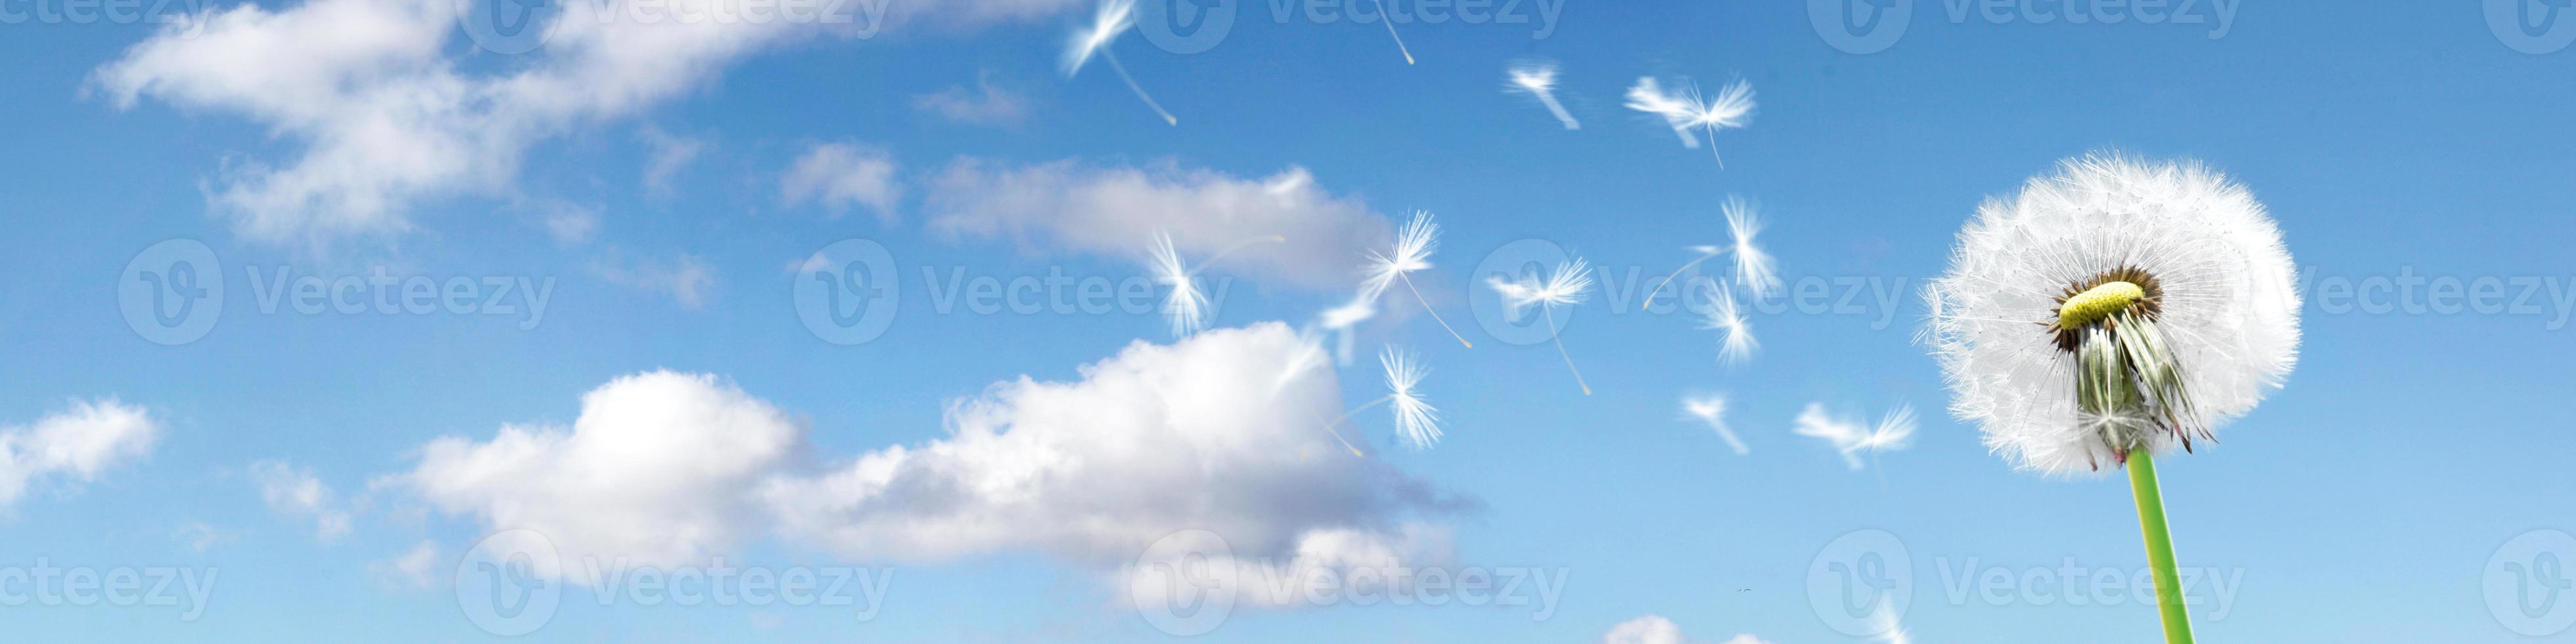 flor de diente de león con plumas voladoras en el cielo azul. foto